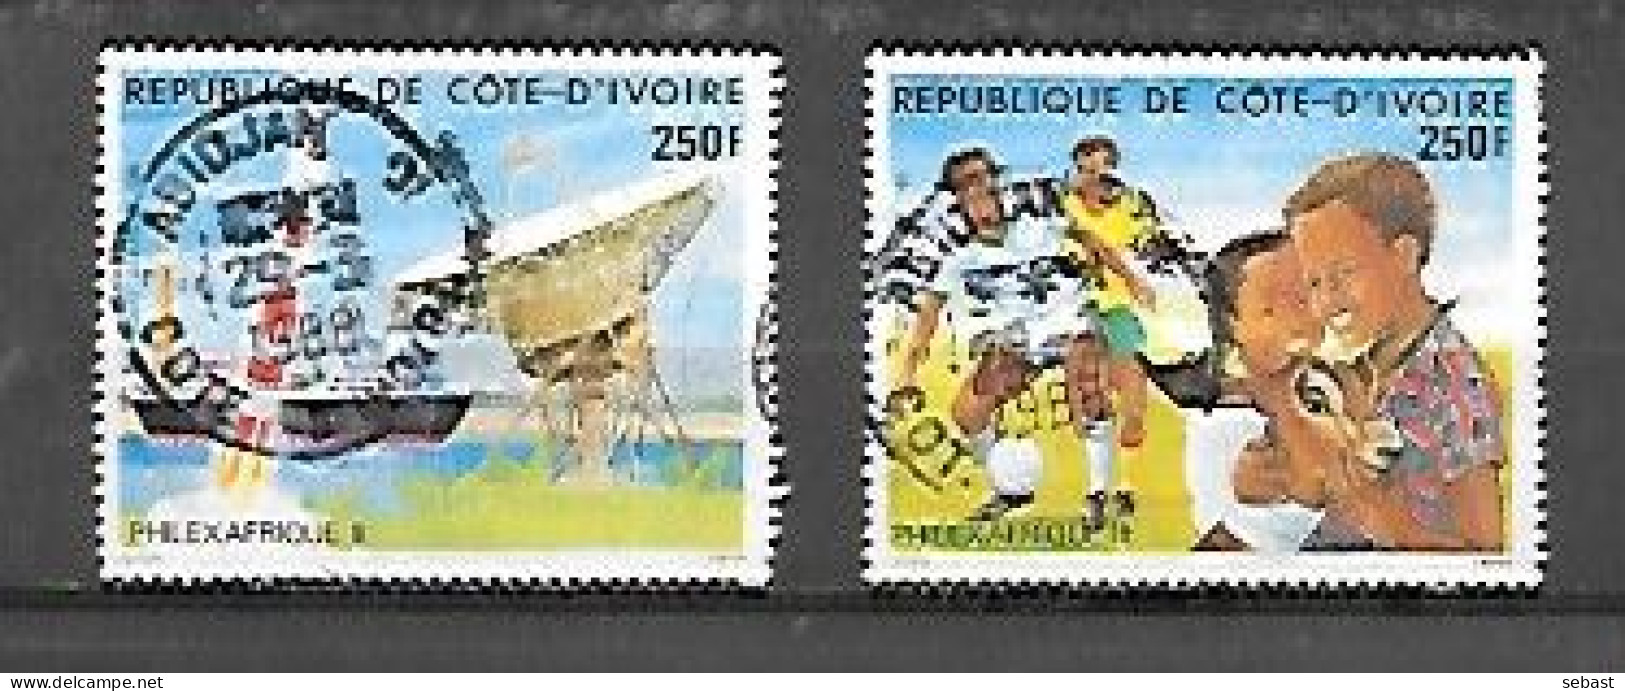 TIMBRE OBLITERE DE COTE D'IVOIRE DE 1985 N° MICHEL 878/79 - Côte D'Ivoire (1960-...)